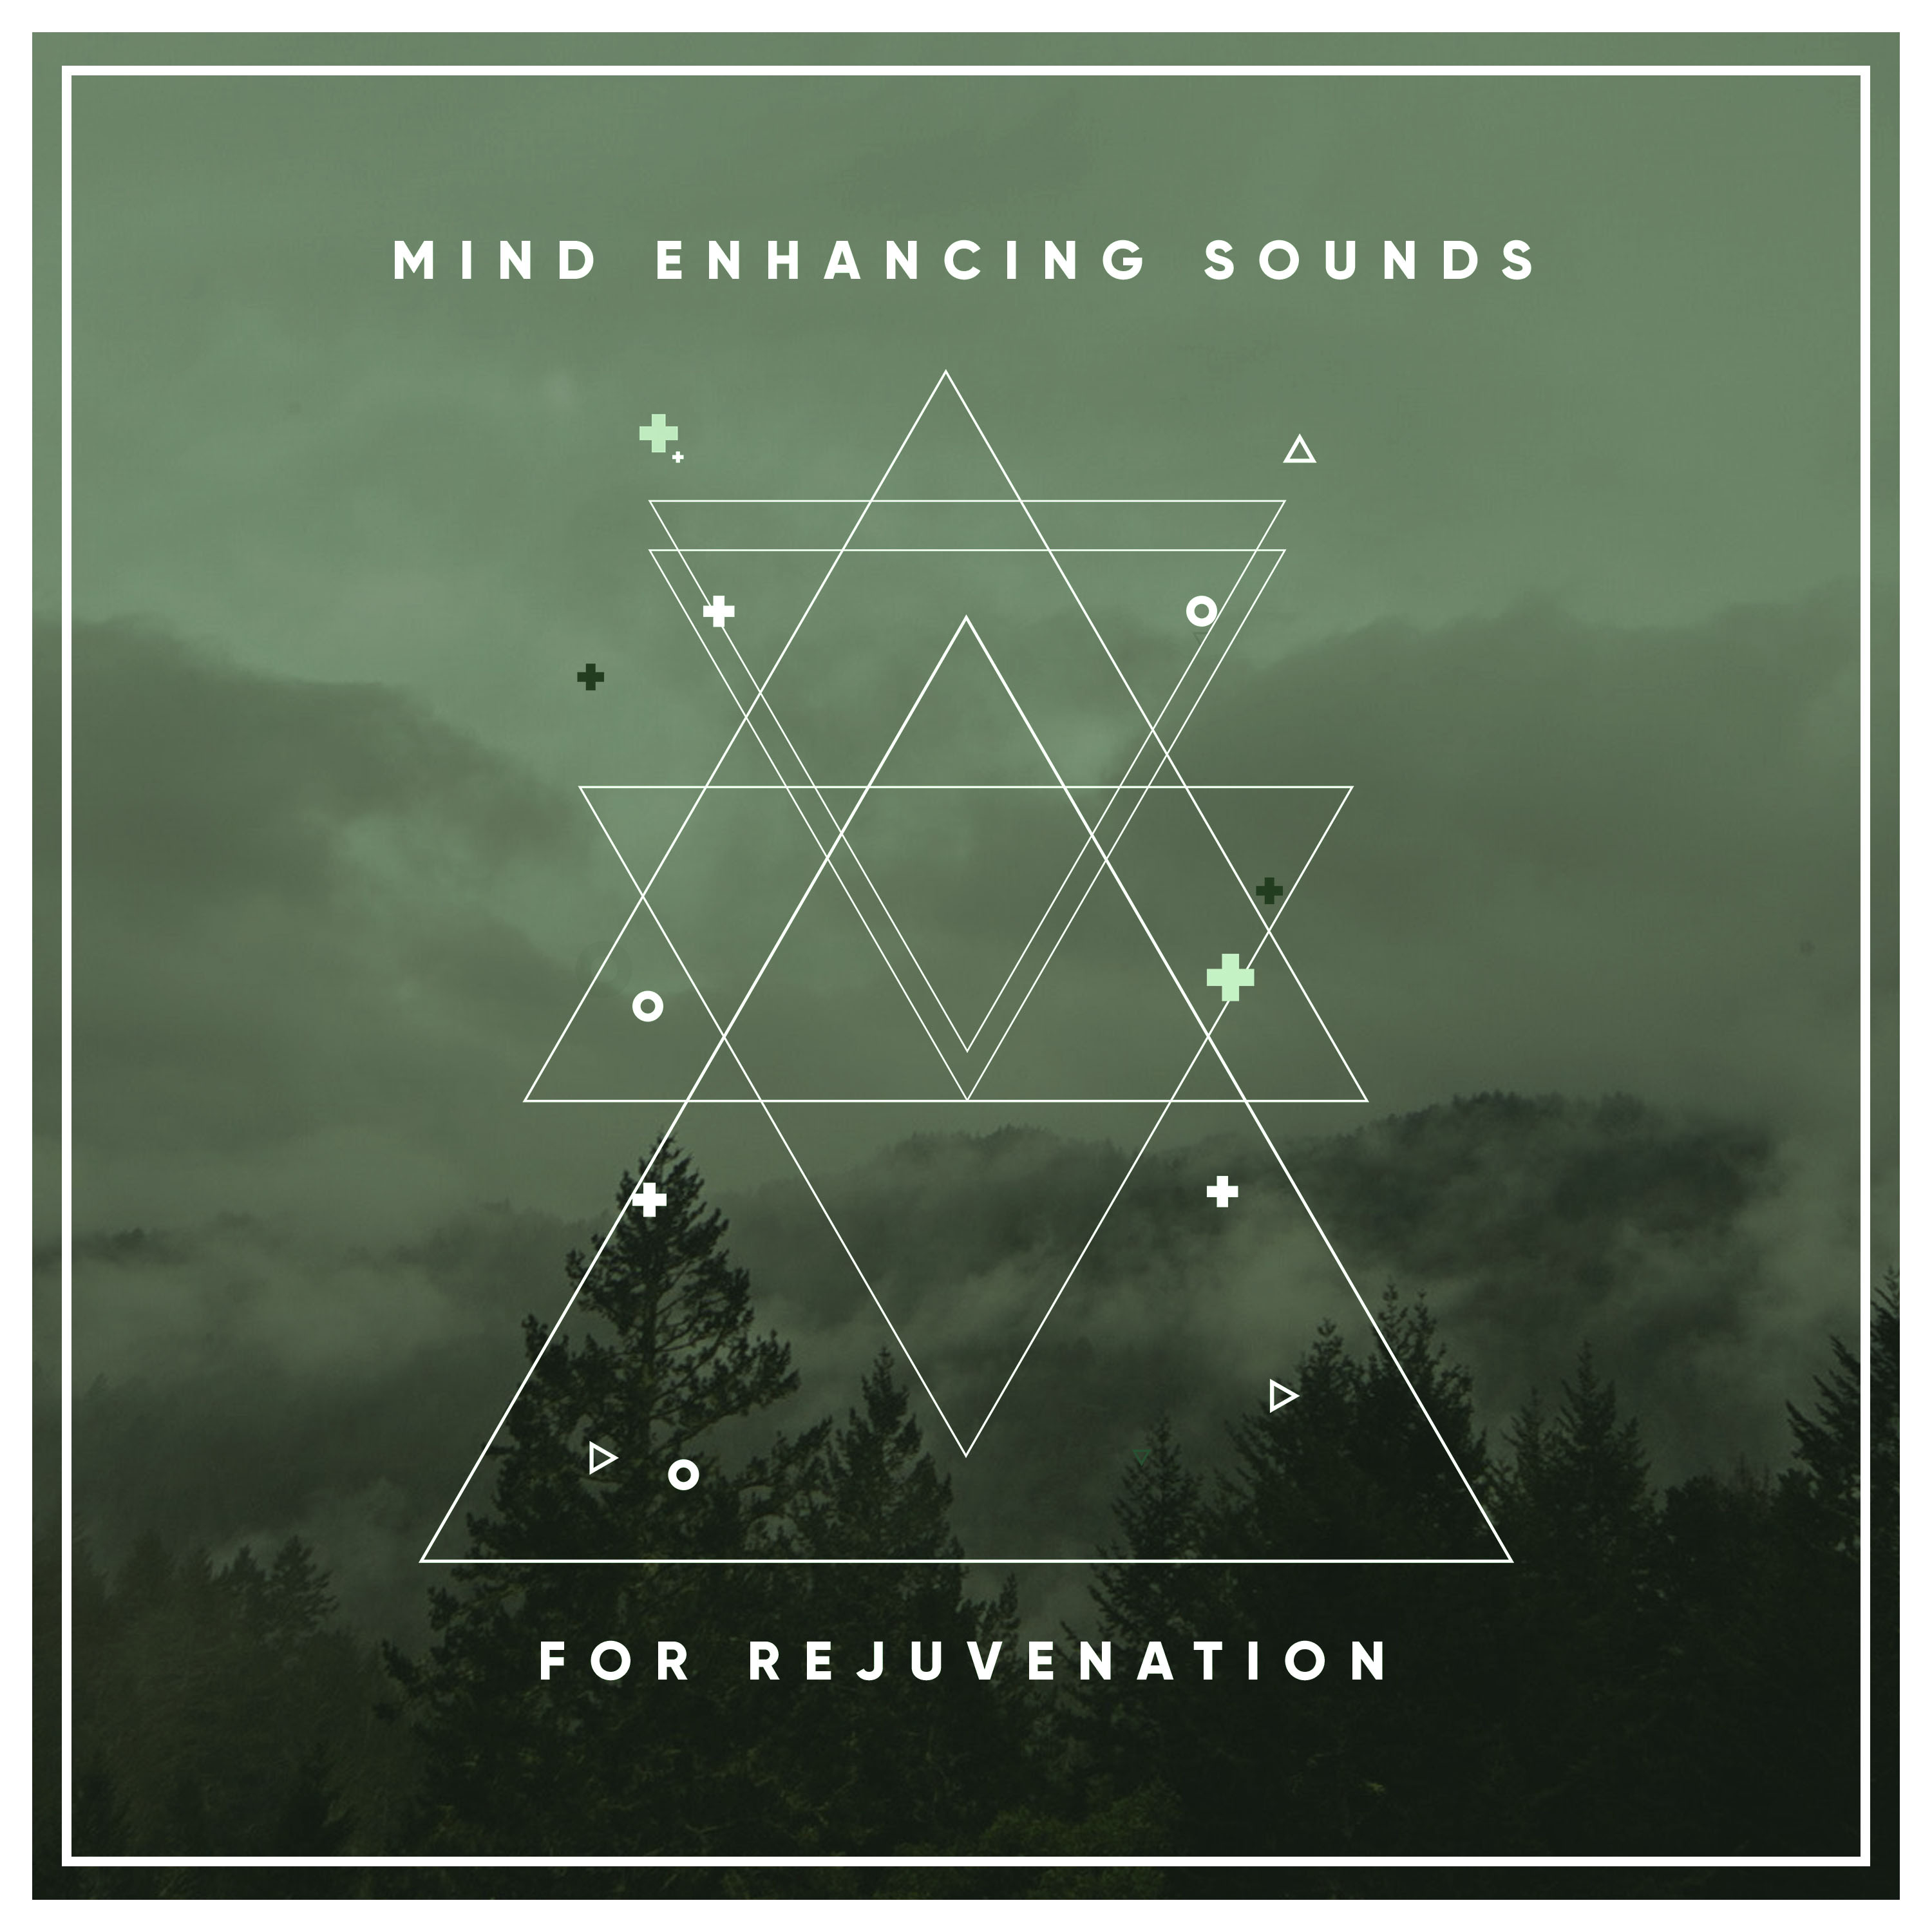 11 Mind Enhancing Sounds for Rejuvenation